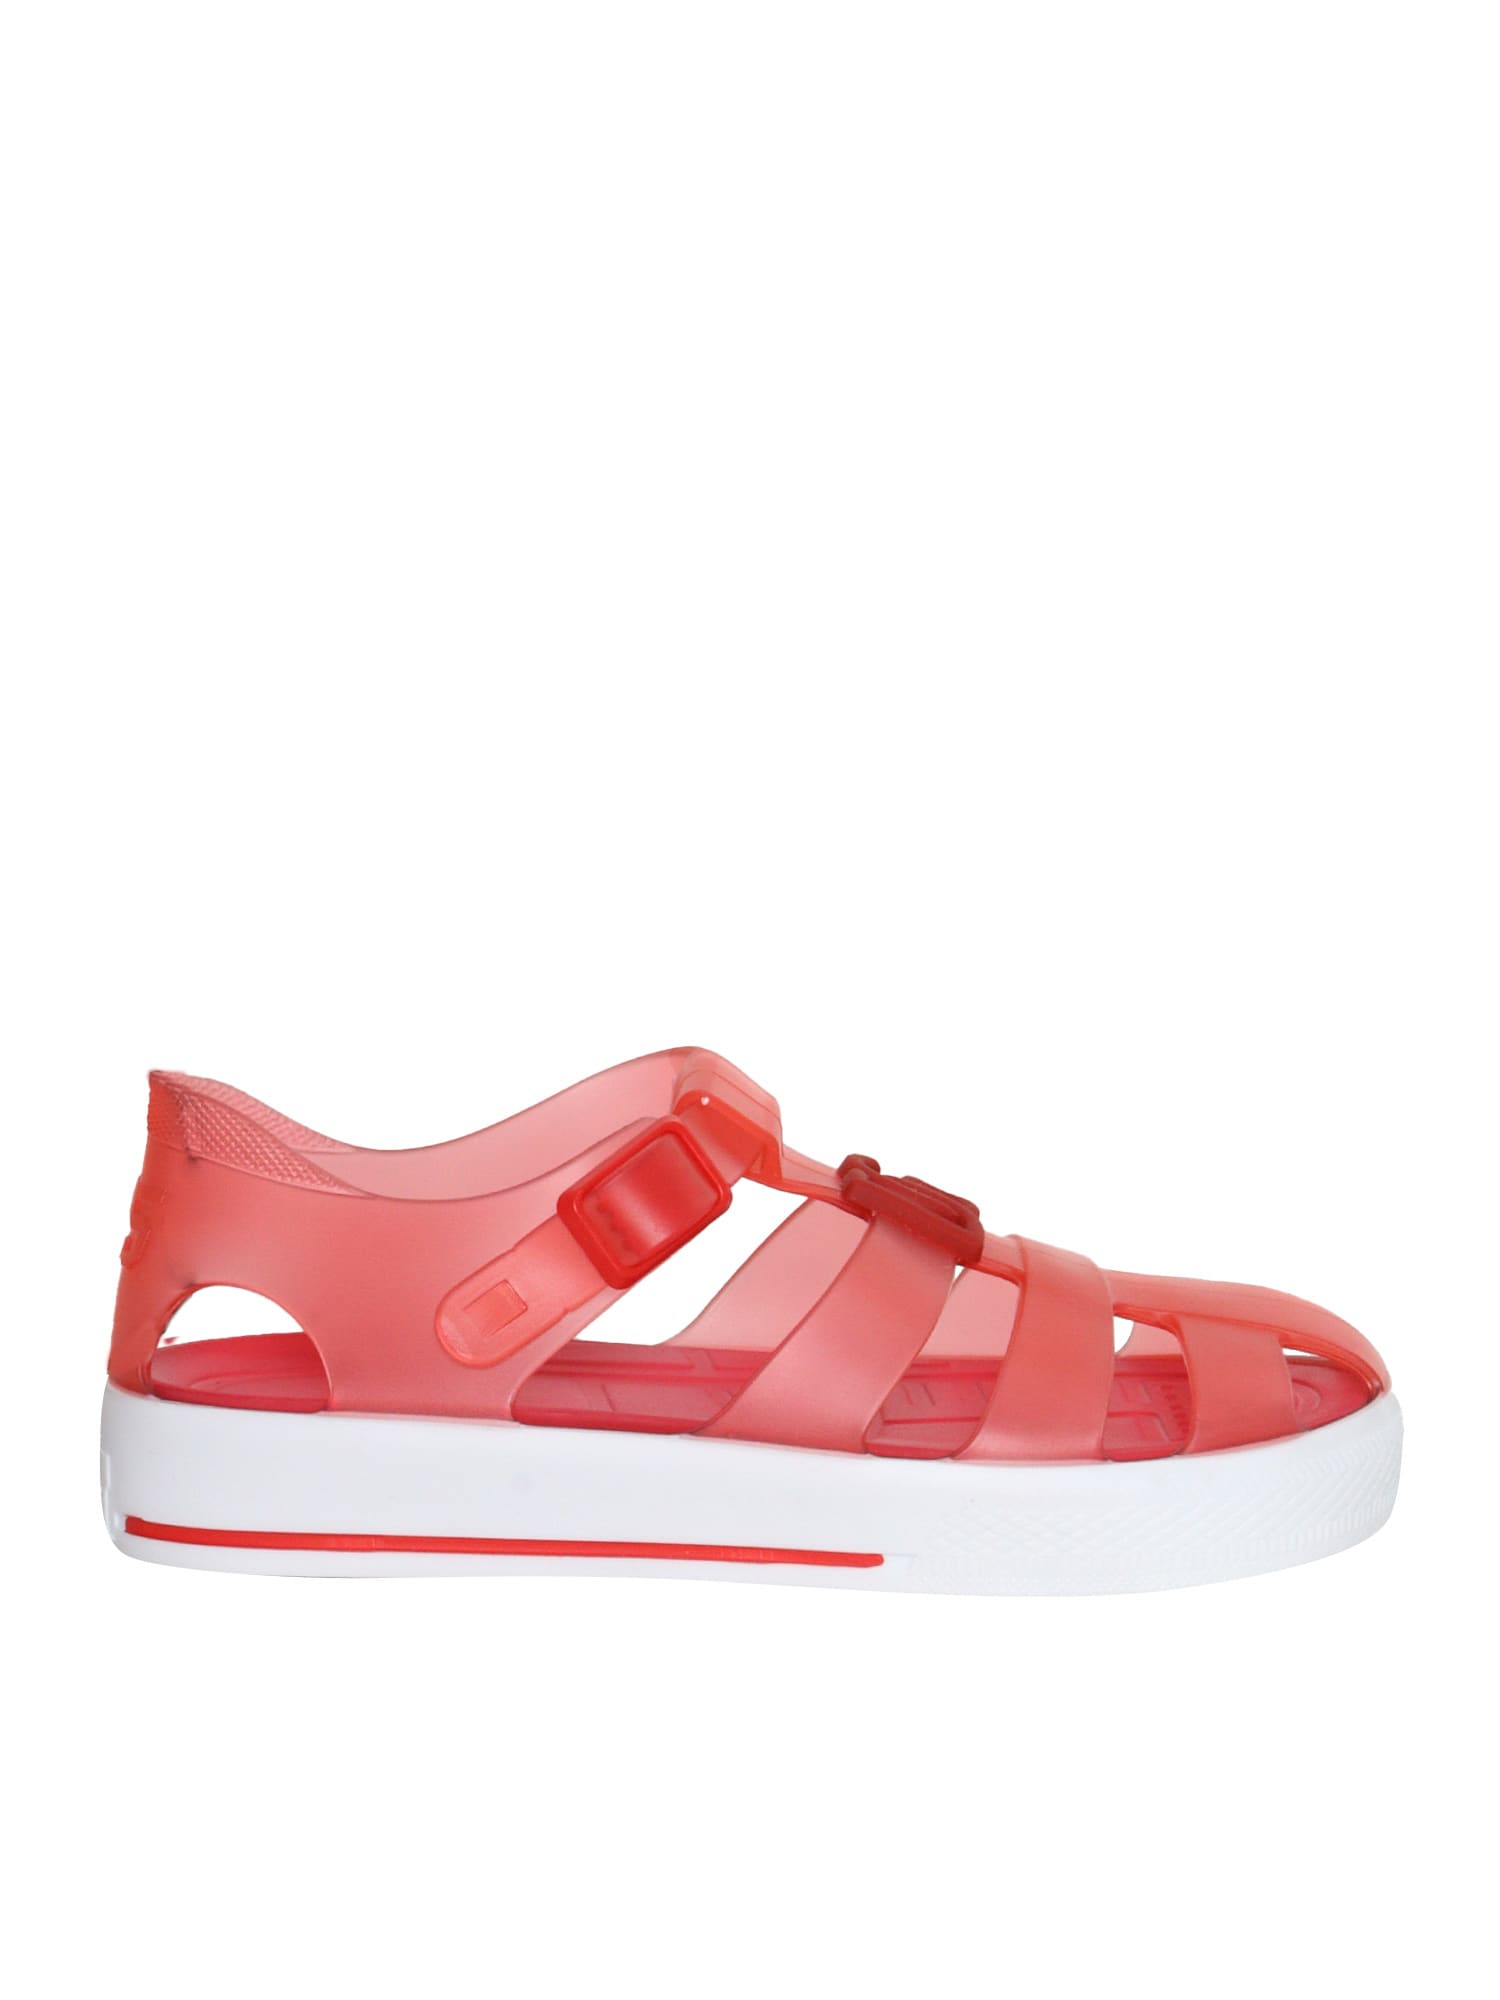 Dolce & Gabbana Kids' Pink Spider Sandals In Red